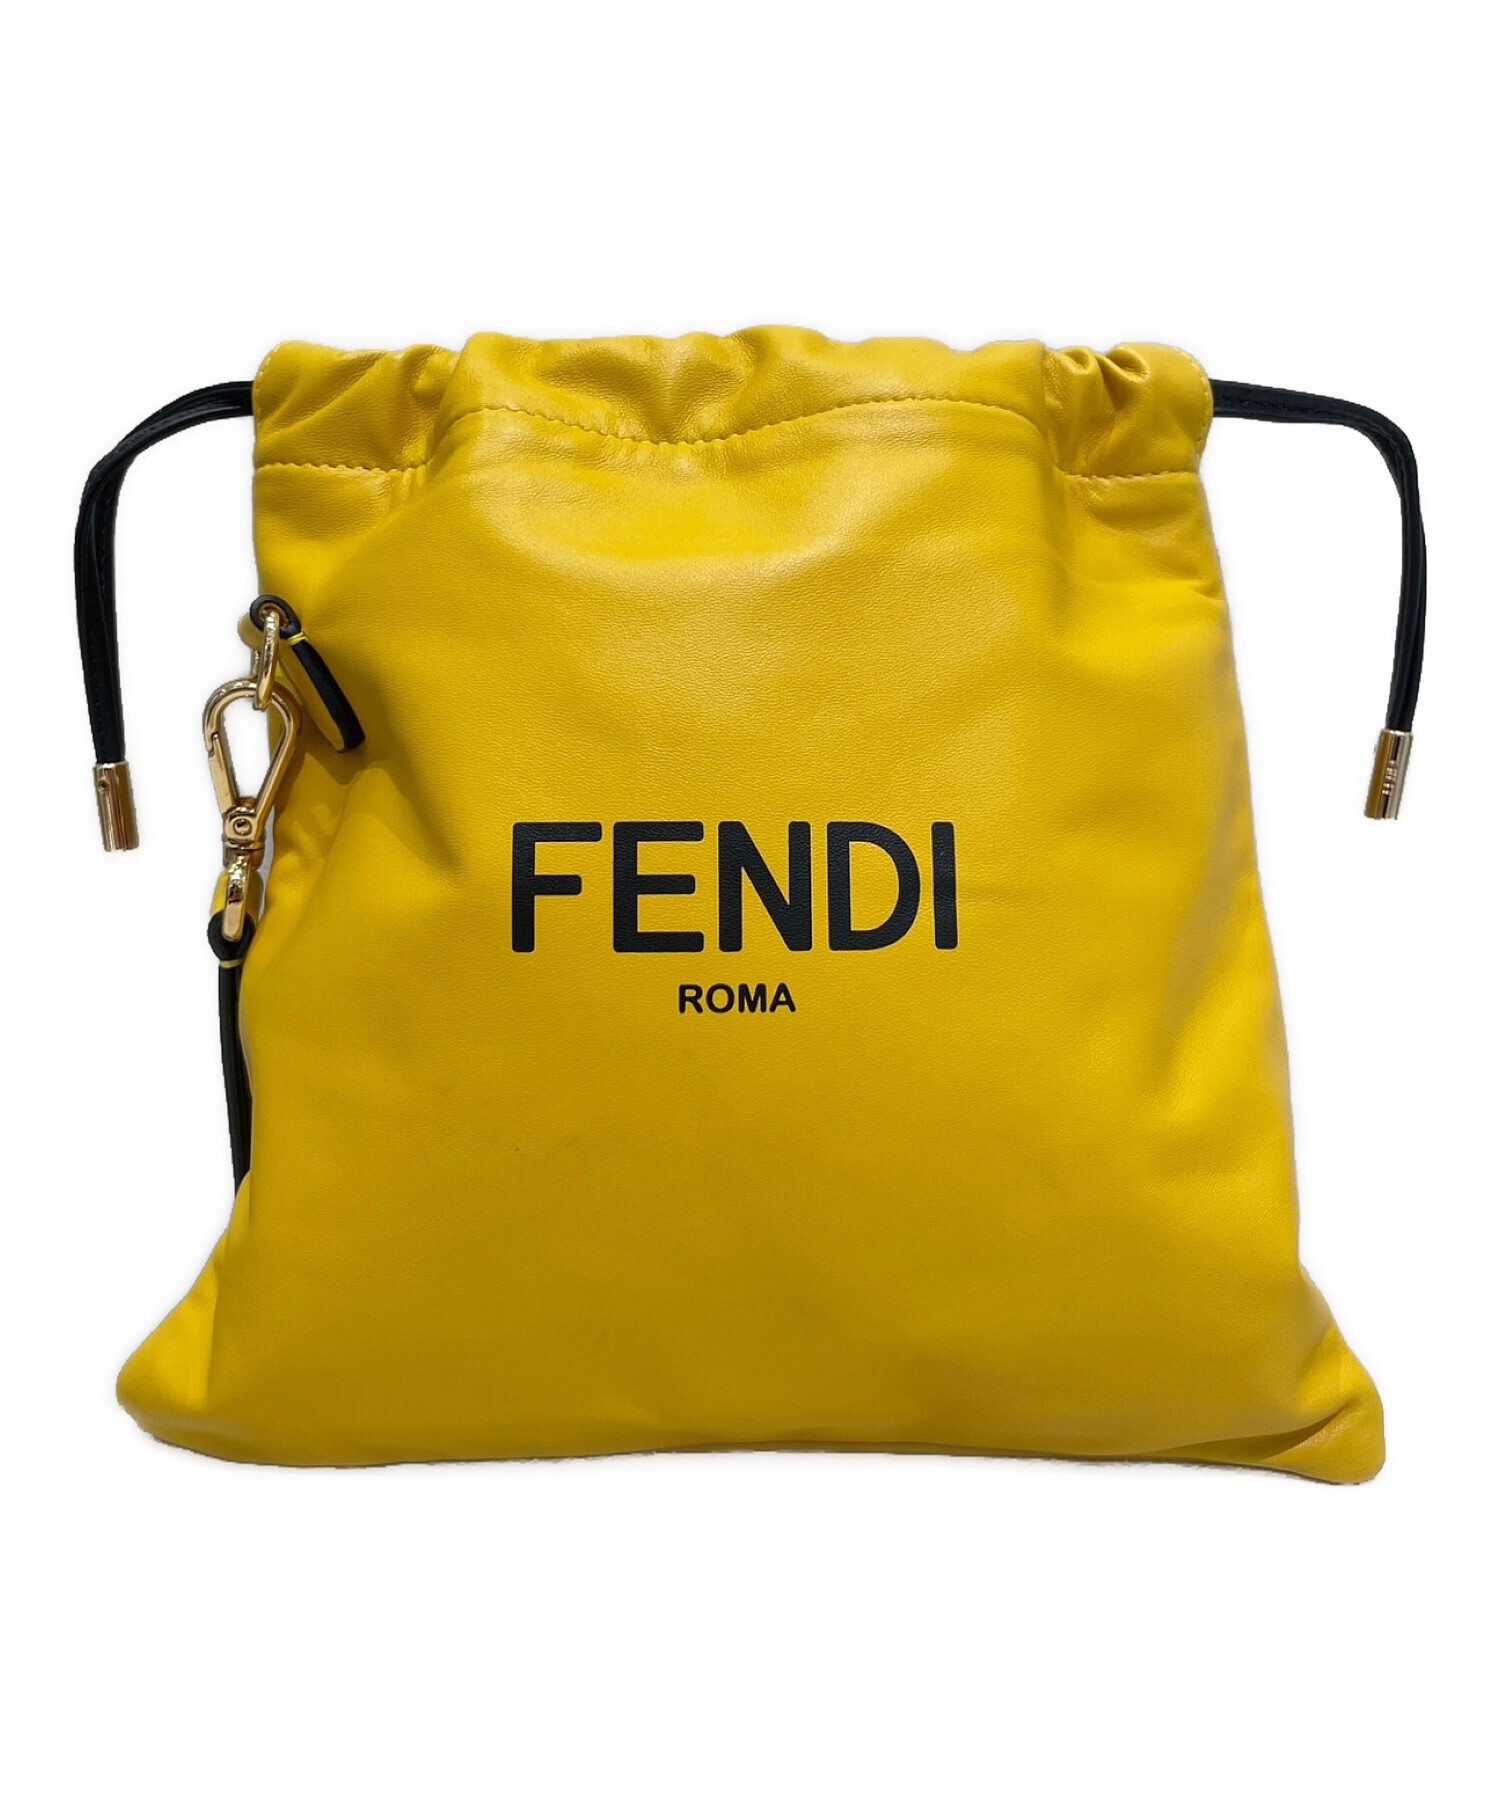 FENDI フェンディ バッグ（その他） - 黄